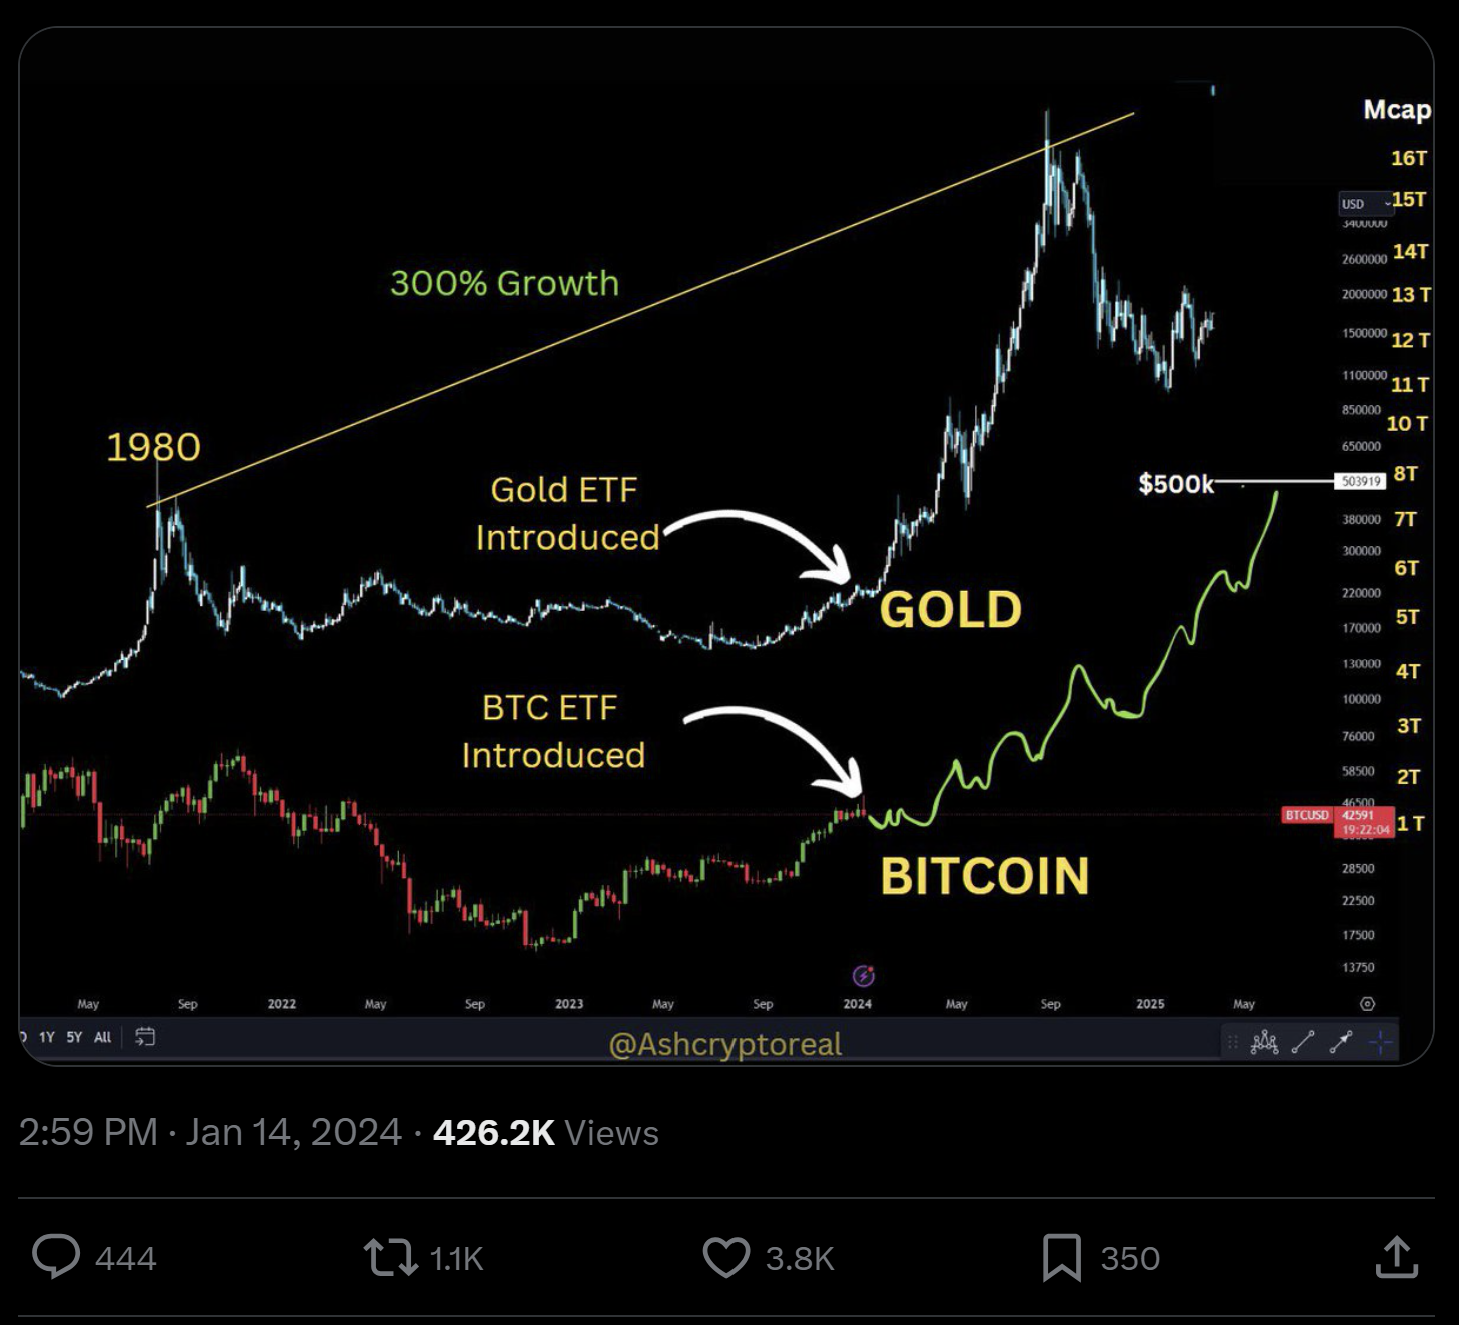 El tuit de Ash Crypto esboza una previsión alcista a largo plazo para el bitcoin, estableciendo paralelismos con la expansión de la capitalización bursátil del oro tras el ETF.